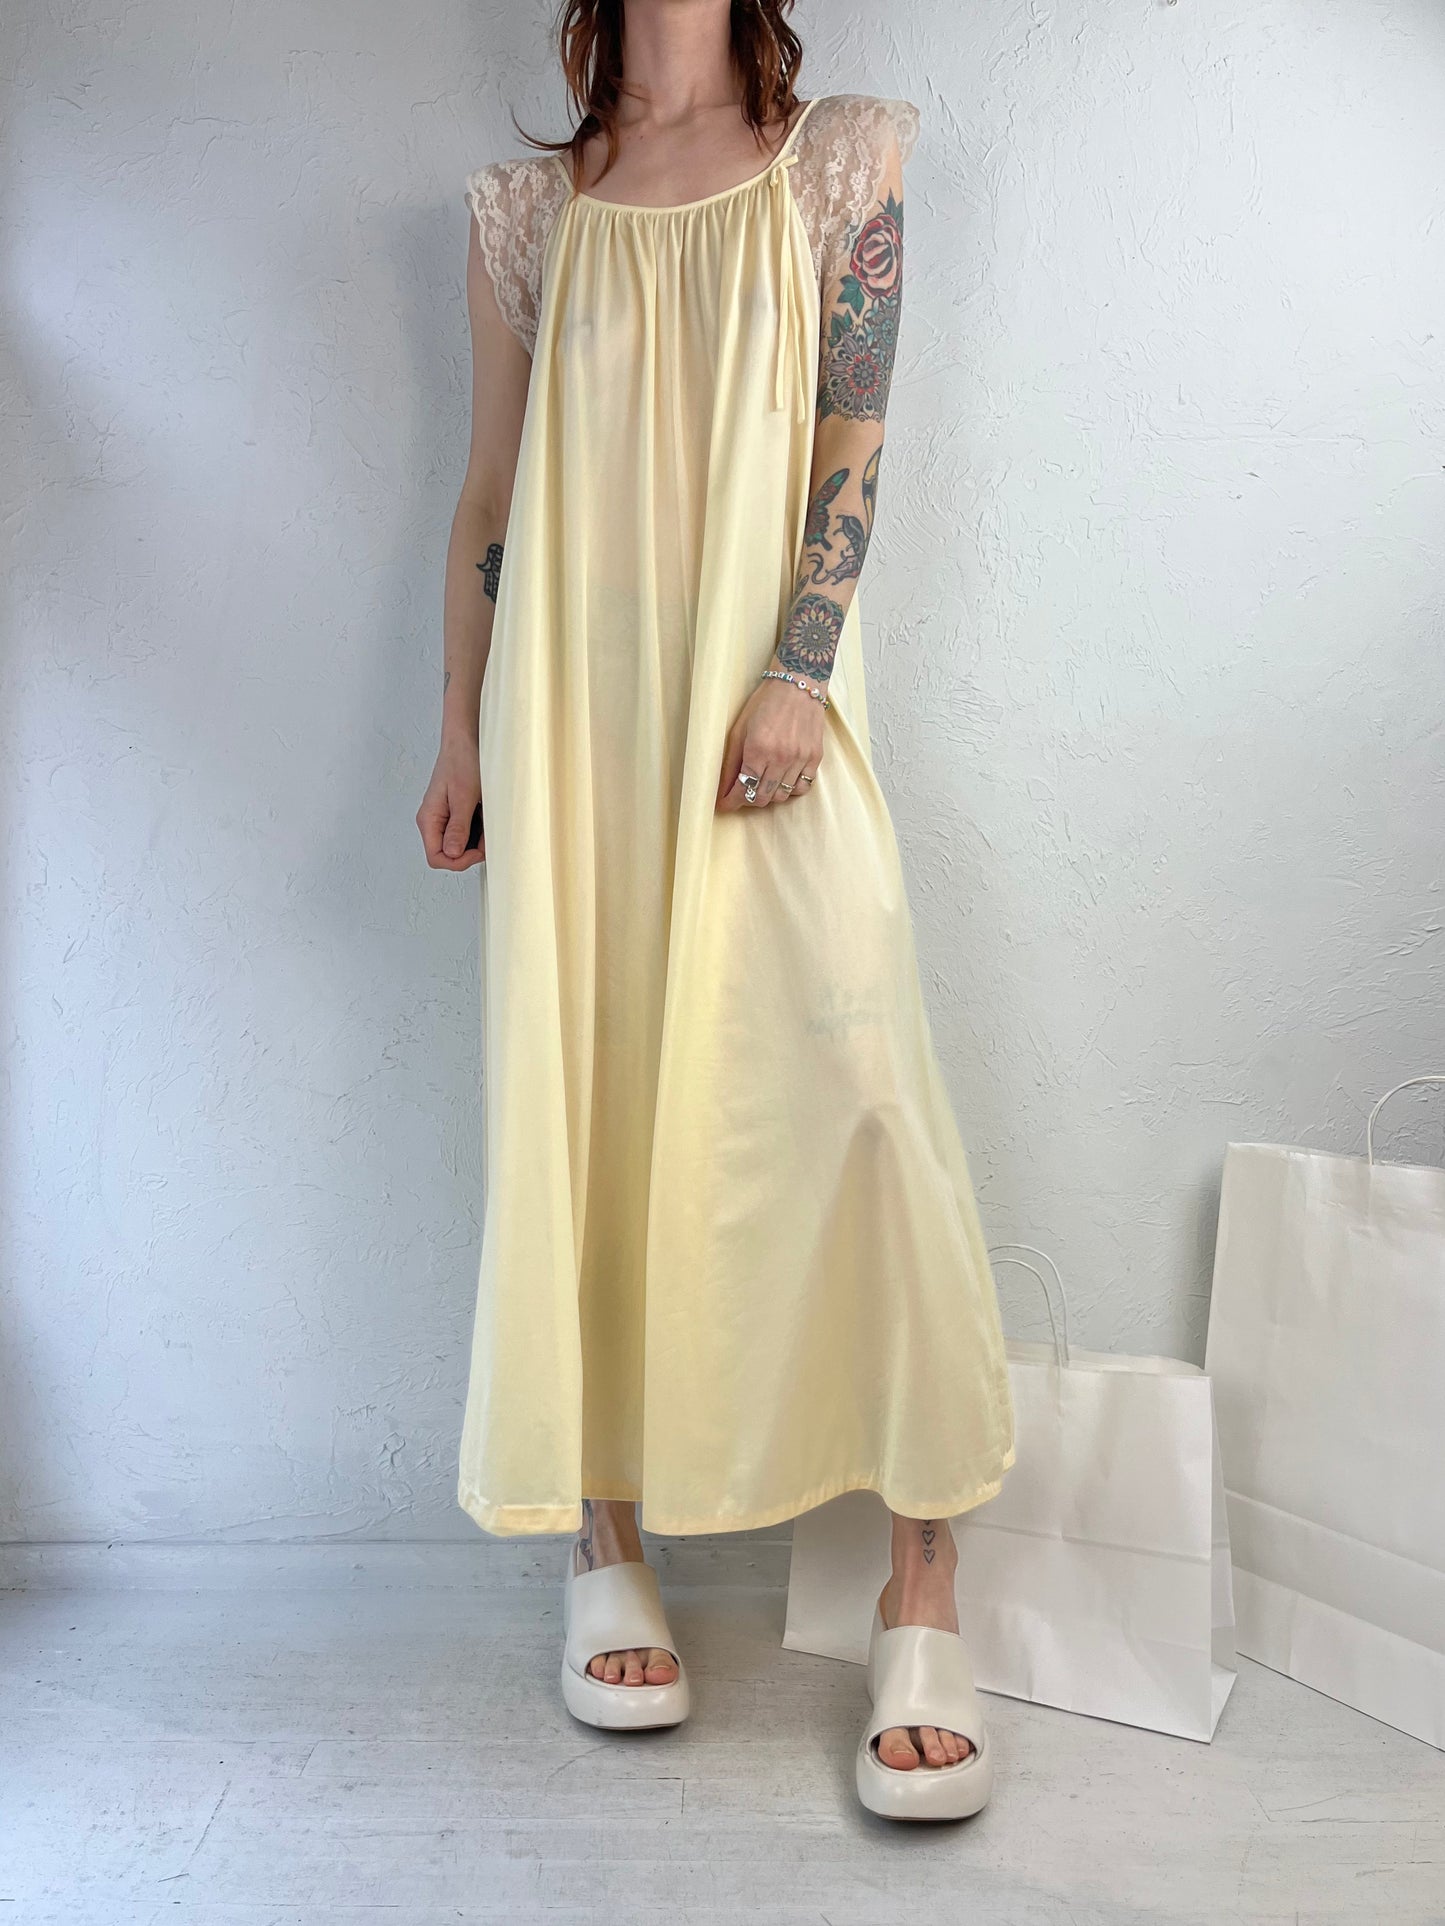 80s 'French Maid' Yellow Nylon Night Gown / Medium